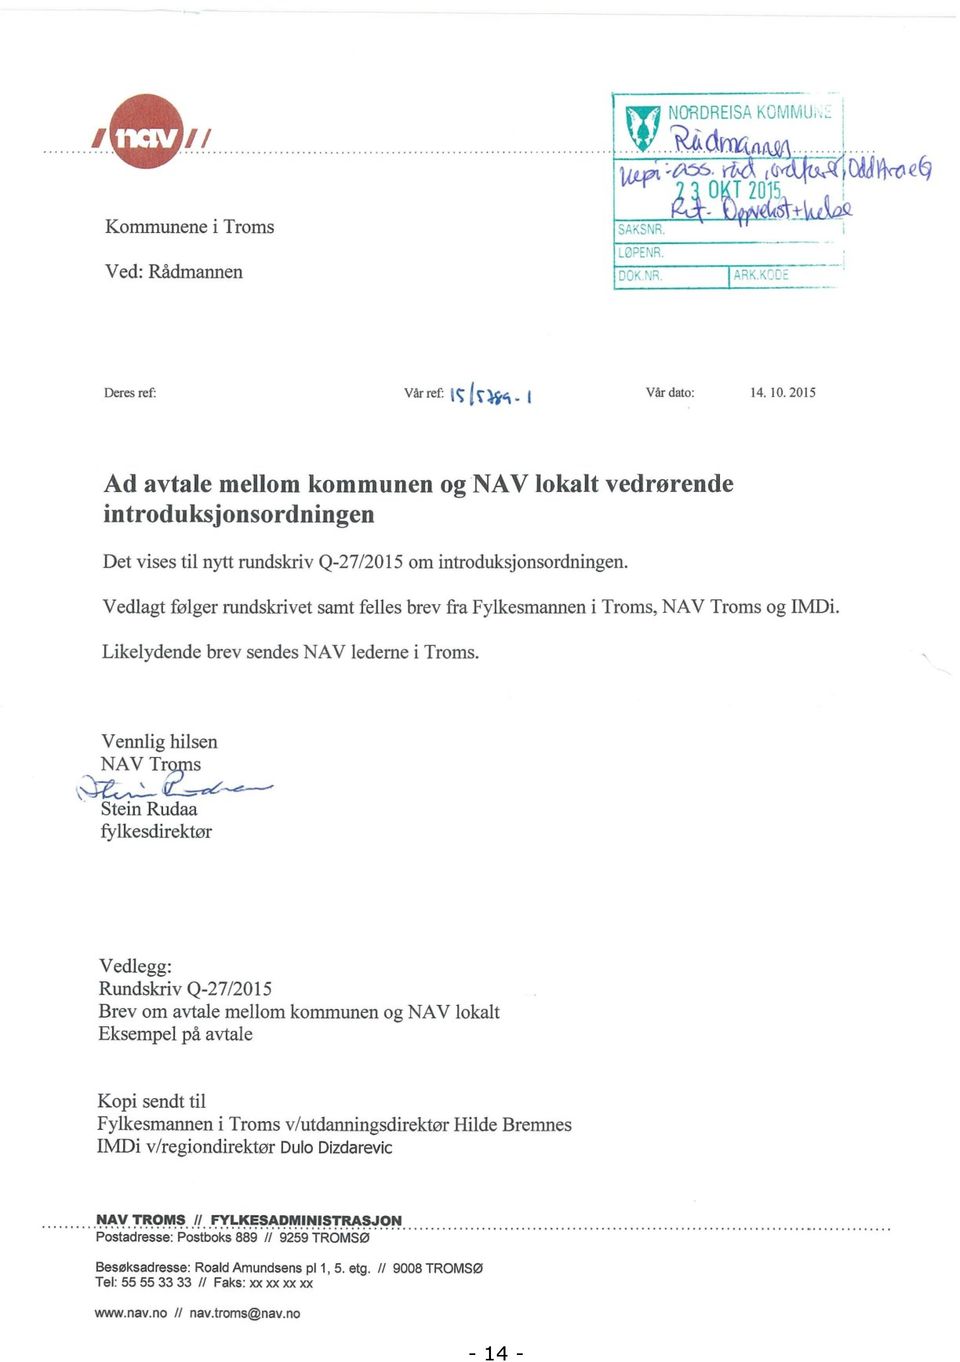 Vedlagt følger rundskrivet samt felles brev fra Fylkesmannen i Troms, NAV Troms og IMDi. Likelydende brev sendes NAV ledeme i Troms.